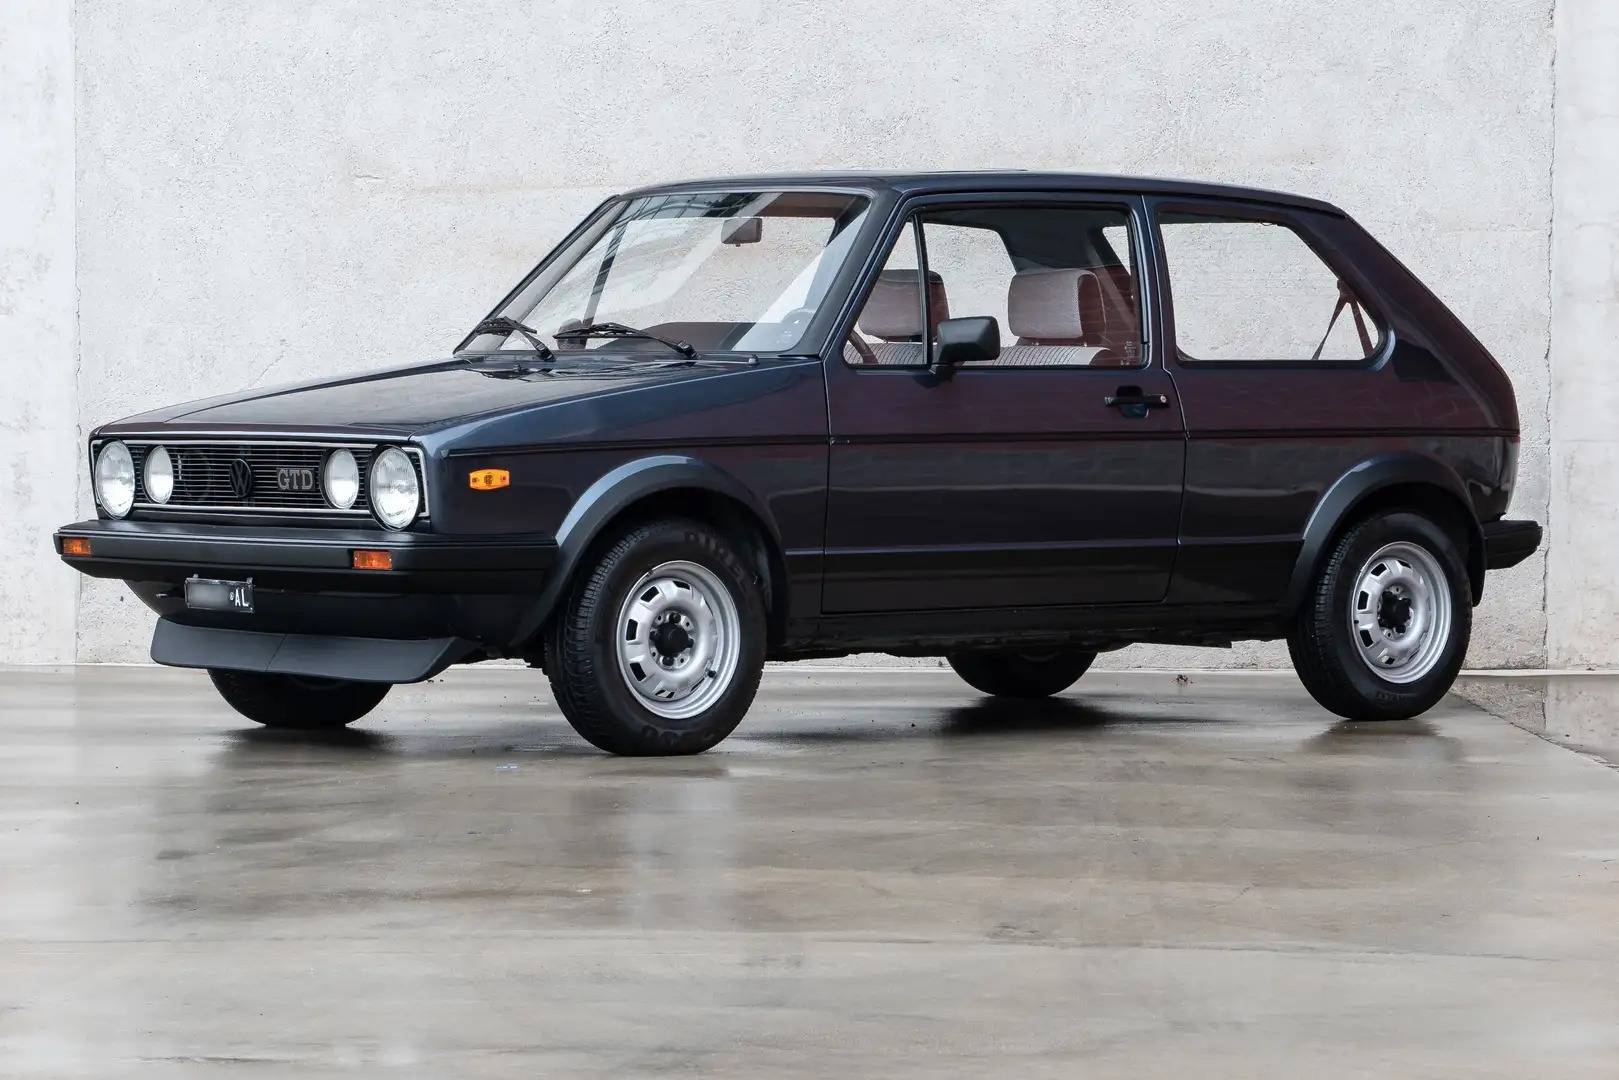 Becks Maan oppervlakte tweedehands Te koop: Volkswagen Golf Mk I GTD 1.6 (1983) aangeboden voor € 17.500